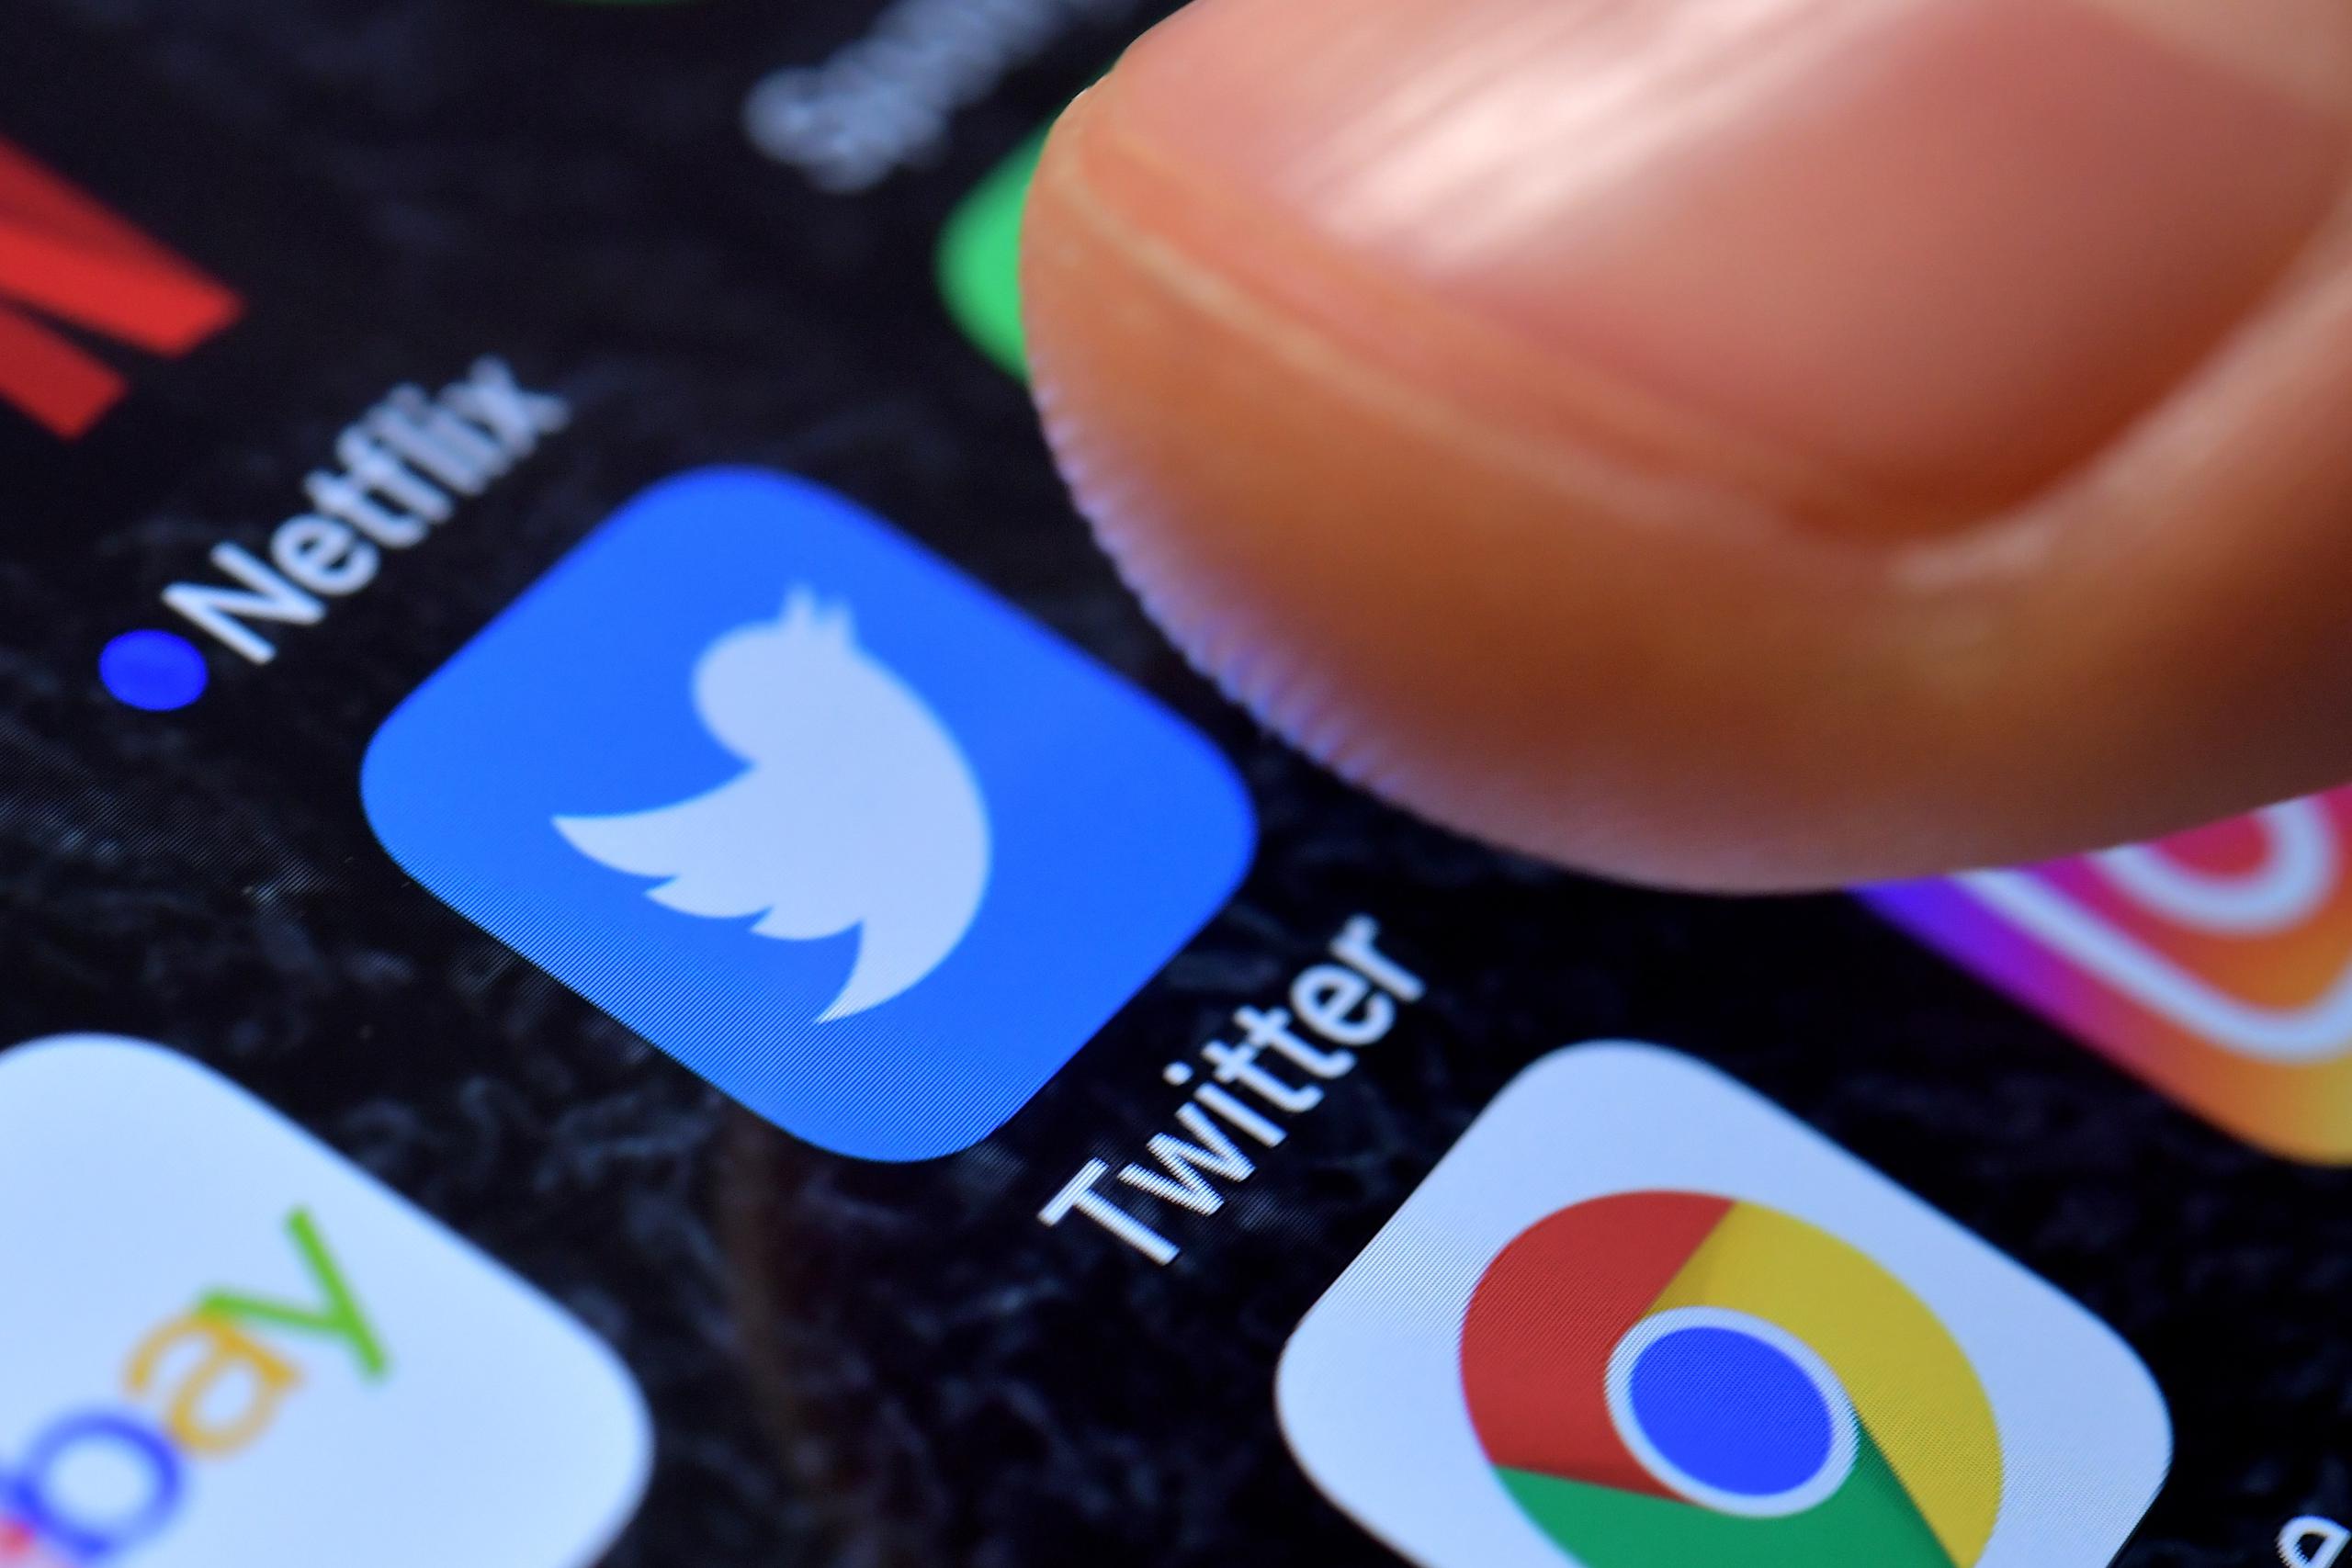 El gobierno amenazó a ejecutivos de Twitter con multas y penas de cárcel si se negaban a acatar la orden.